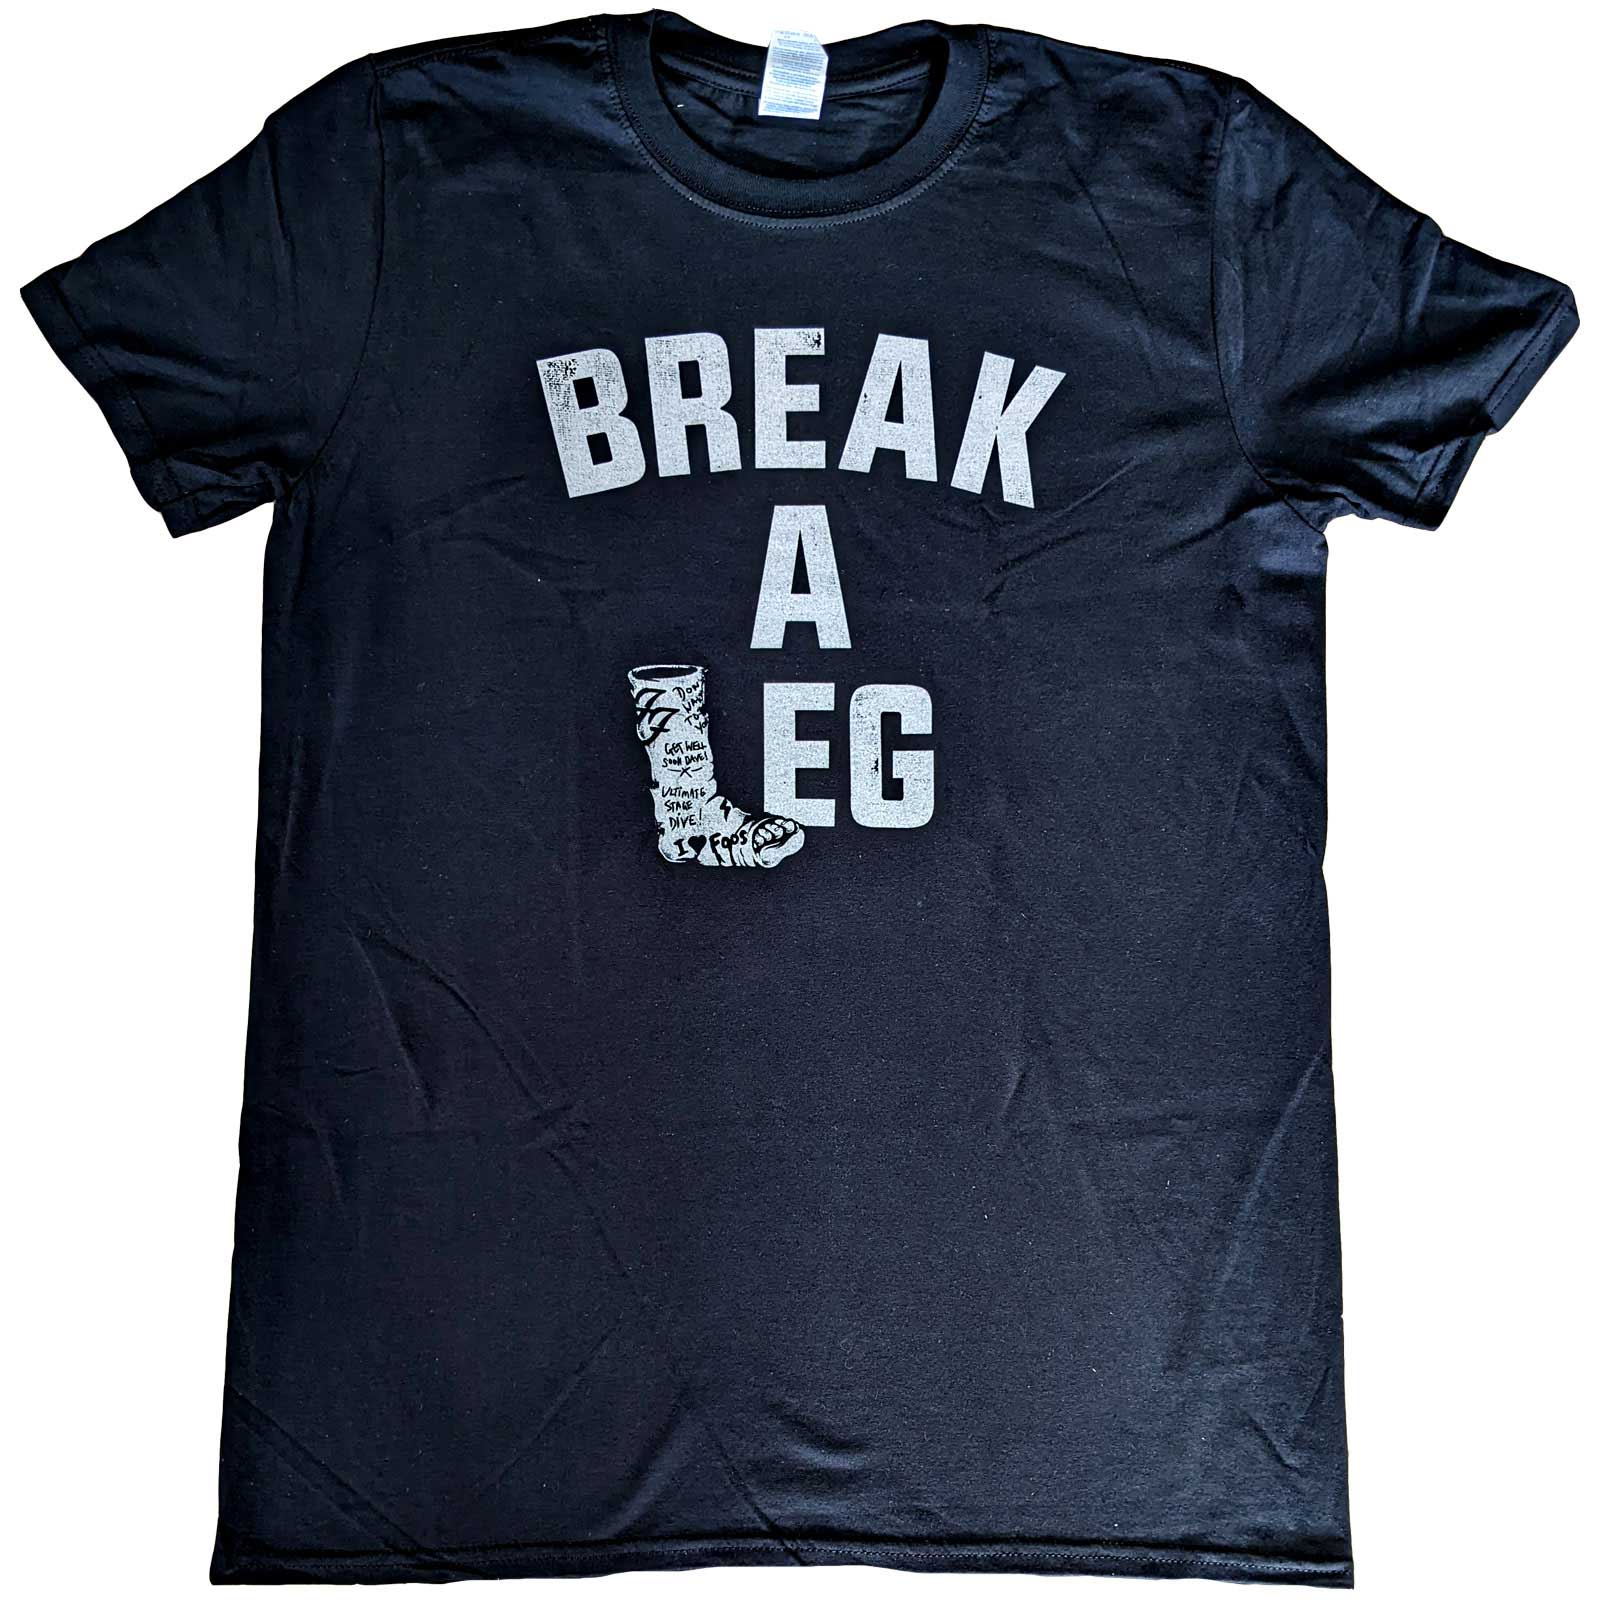 (フー ファイターズ) Foo Fighters オフィシャル商品 ユニセックス Break A Leg Tシャツ 半袖 トップス 【海外通販】